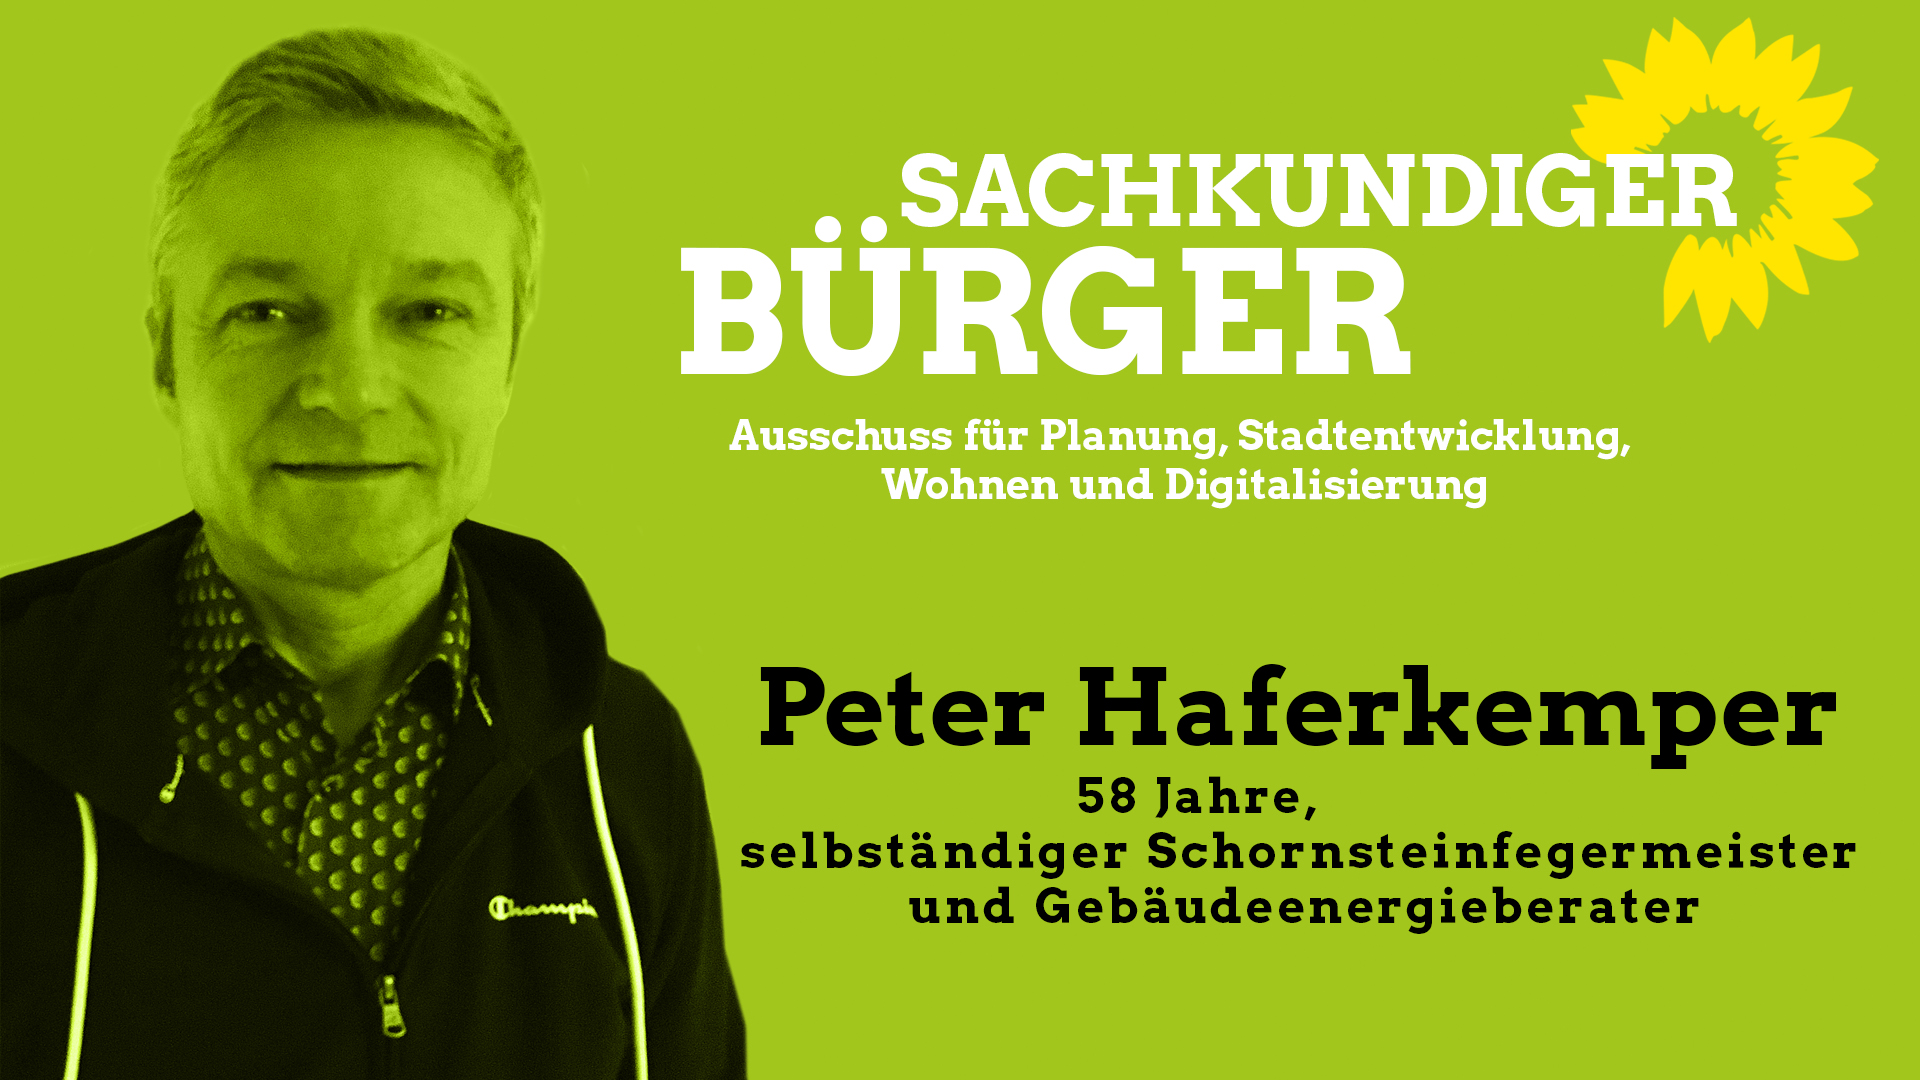 Peter Haferkemper, sachkundiger Bürger